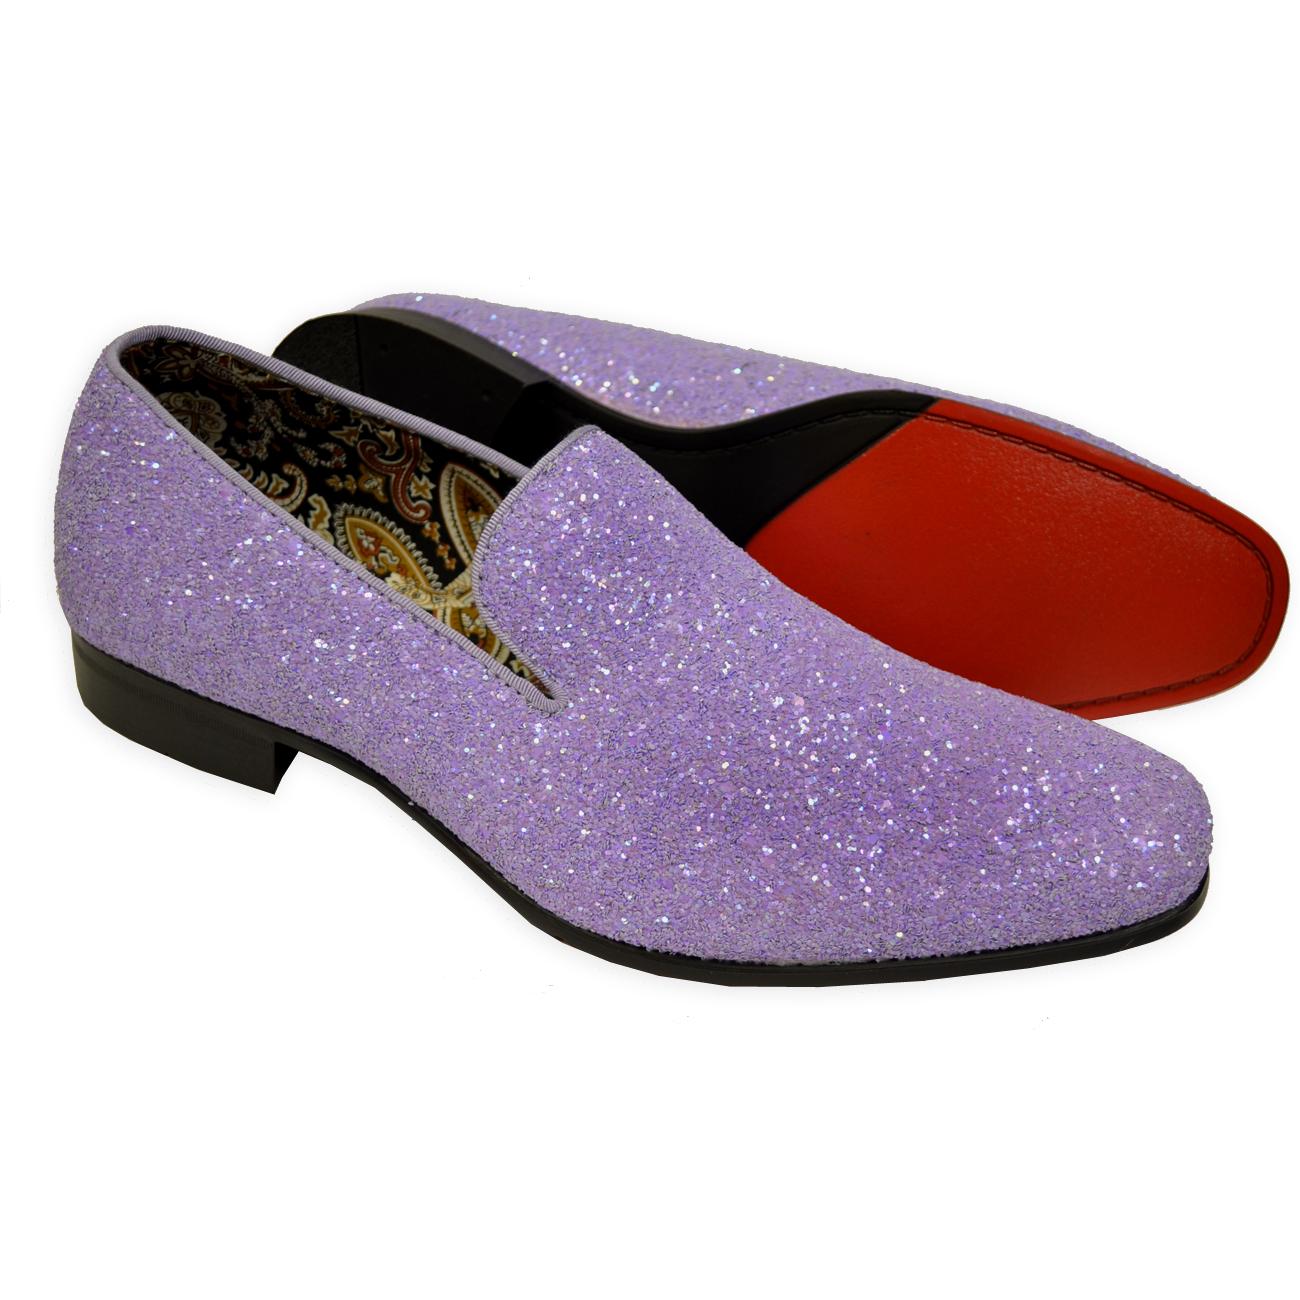 Antonio Cerrelli Lavender Glittered Slip-On 6683 - $69.90 :: Upscale ...